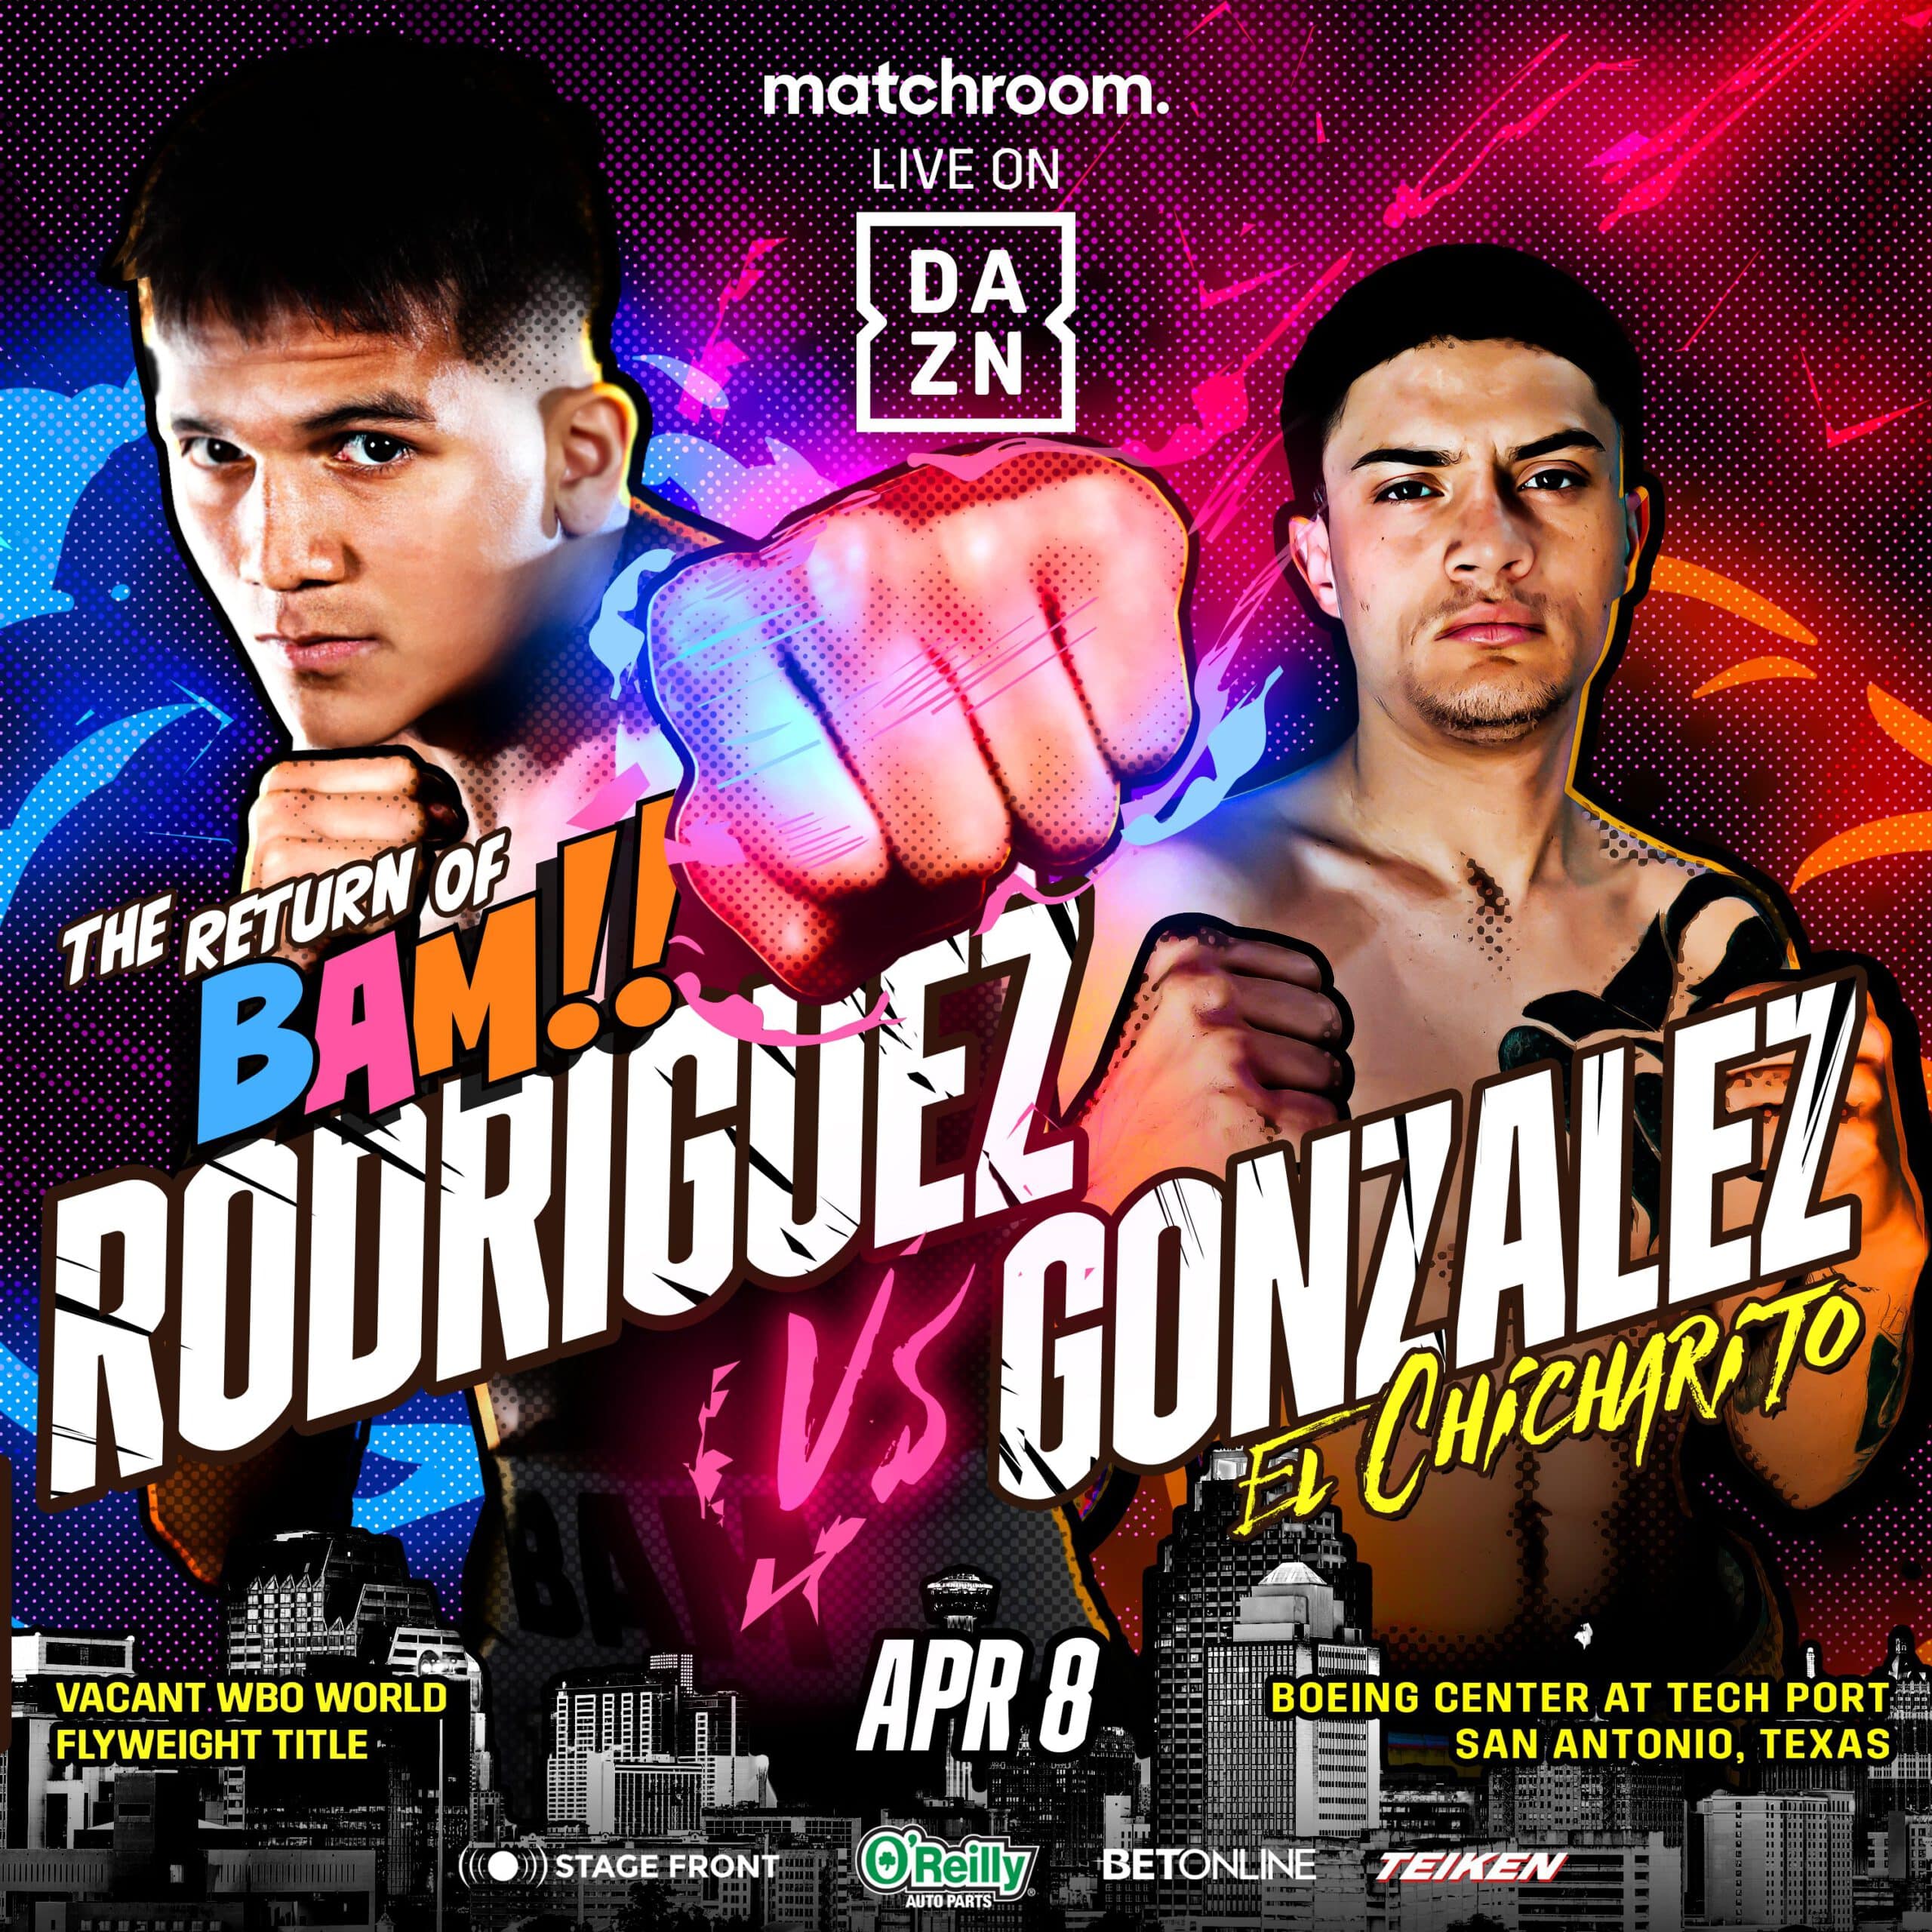 BAM Rodriguez vs Gonzalez - DAZN - April 8 - 9 pm ET